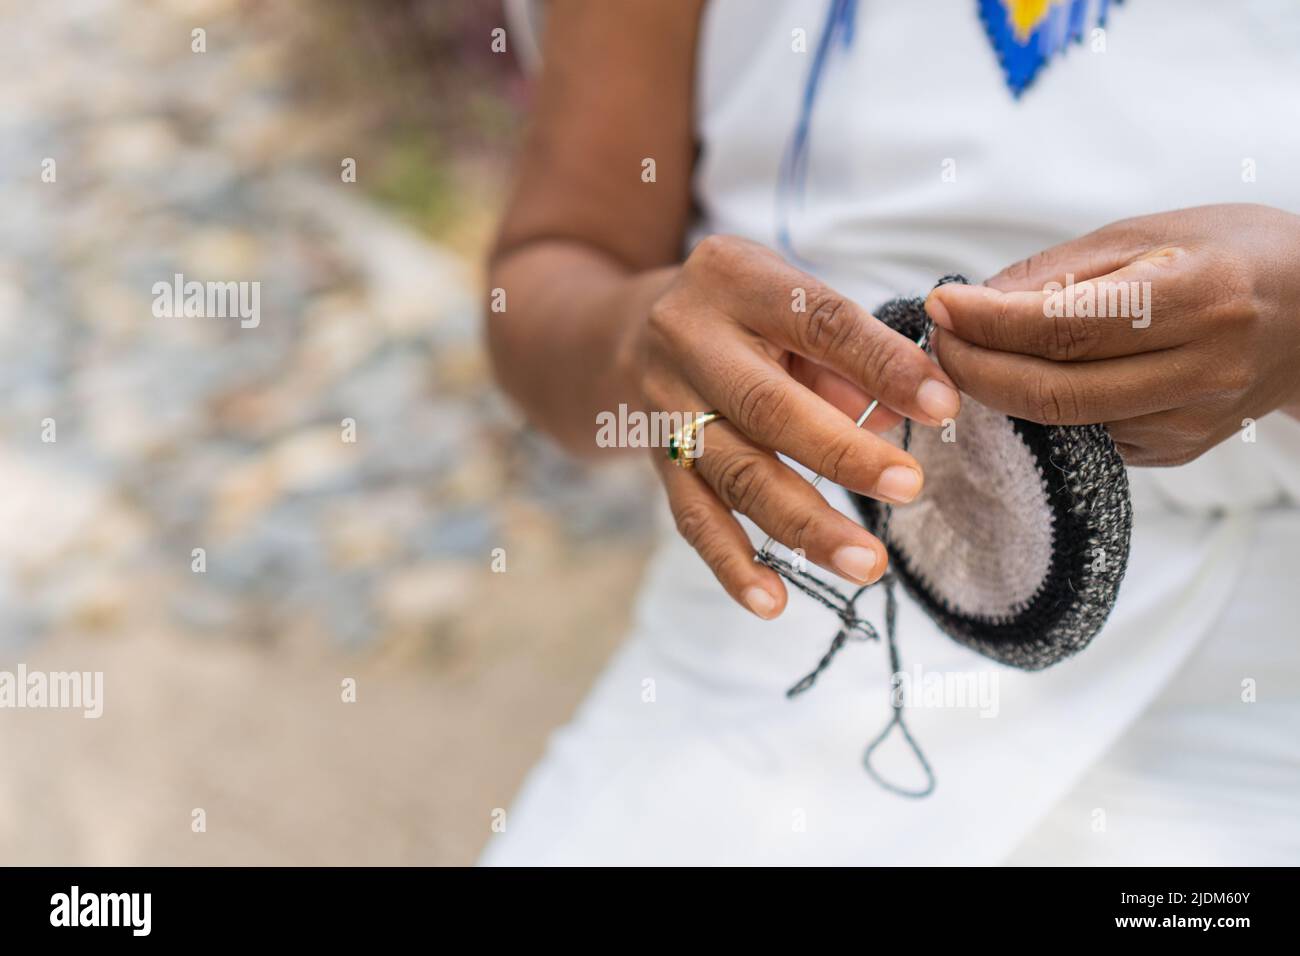 Tejedor colombiano irreconocible en tradicional. Precioso primer de las manos una mujer en la Sierra Nevada de Santa Marta hecho a mano Fotografía de stock -